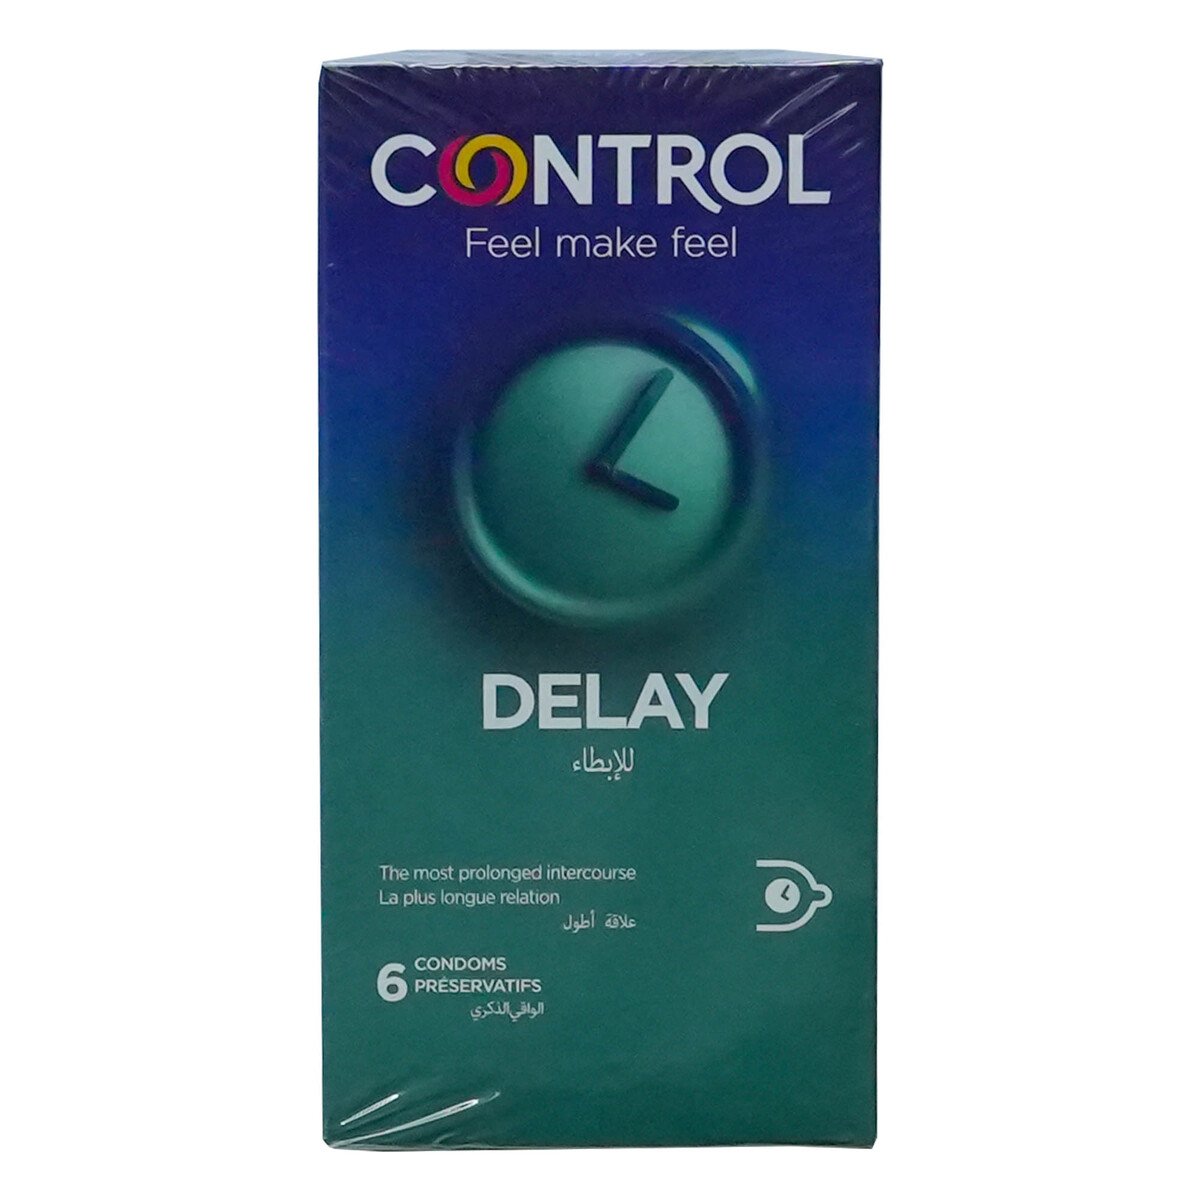 Control Delay Condom 6 pcs